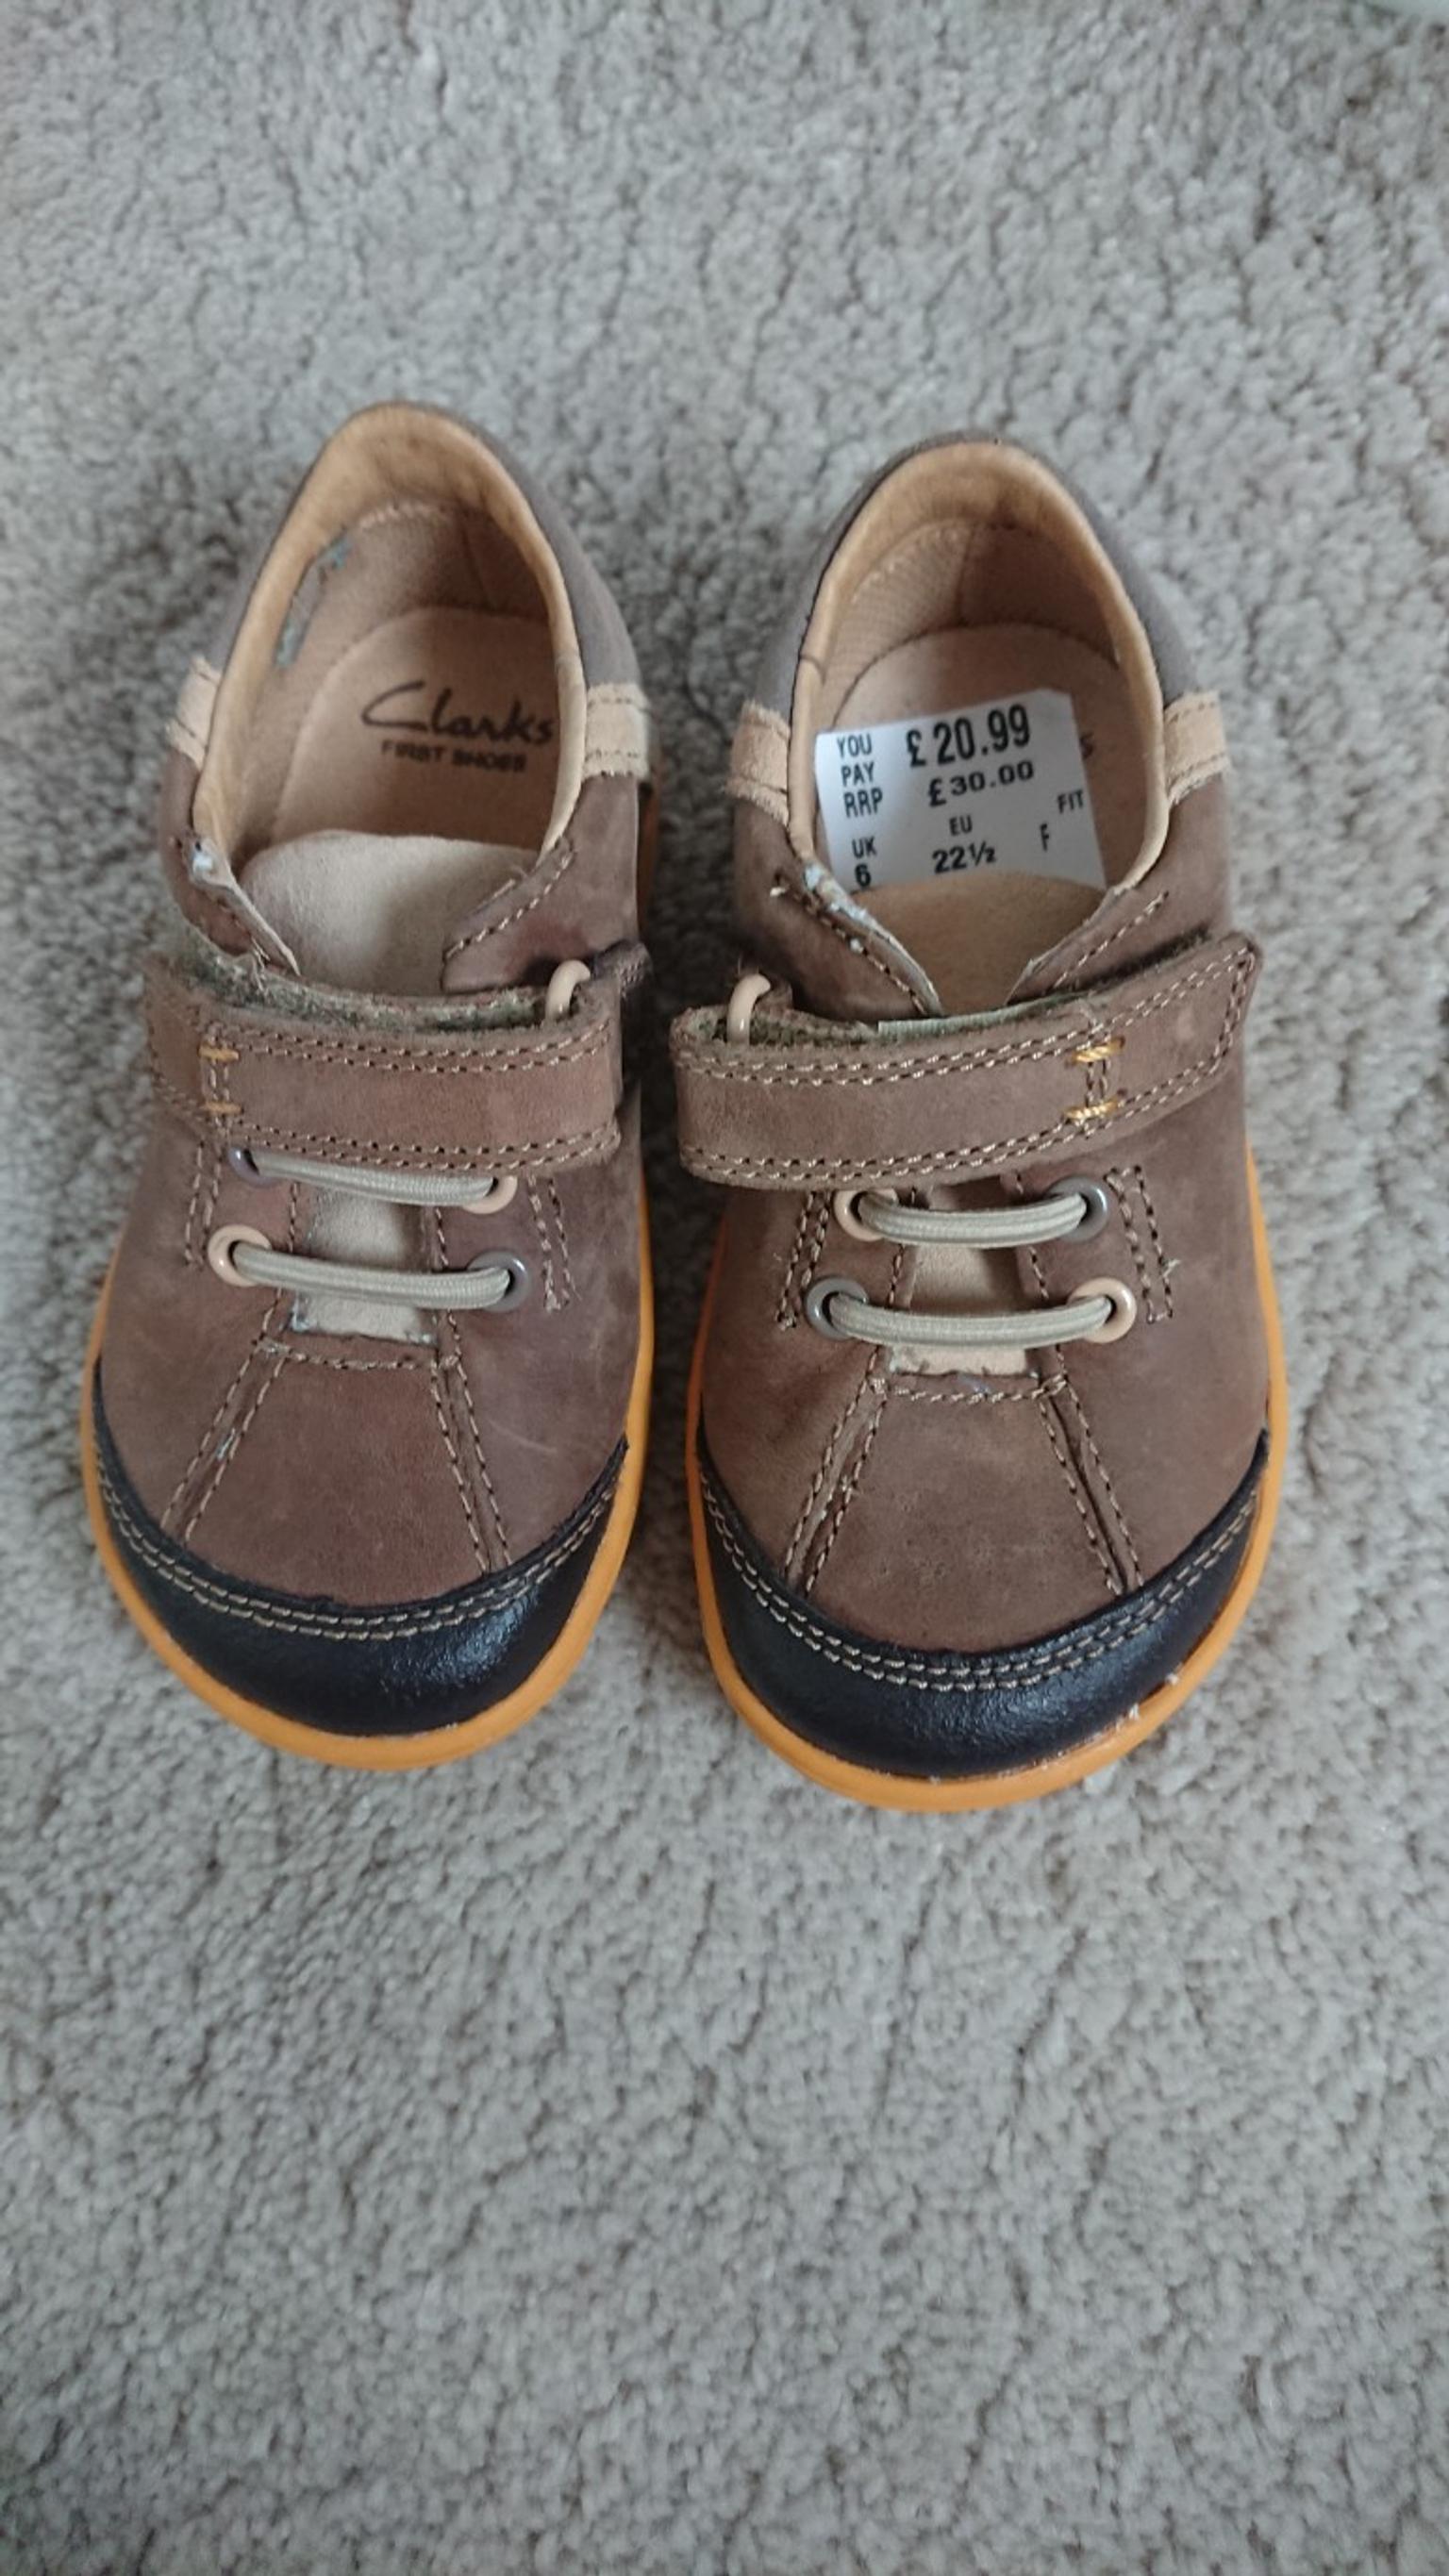 clarks children's shoes measurements